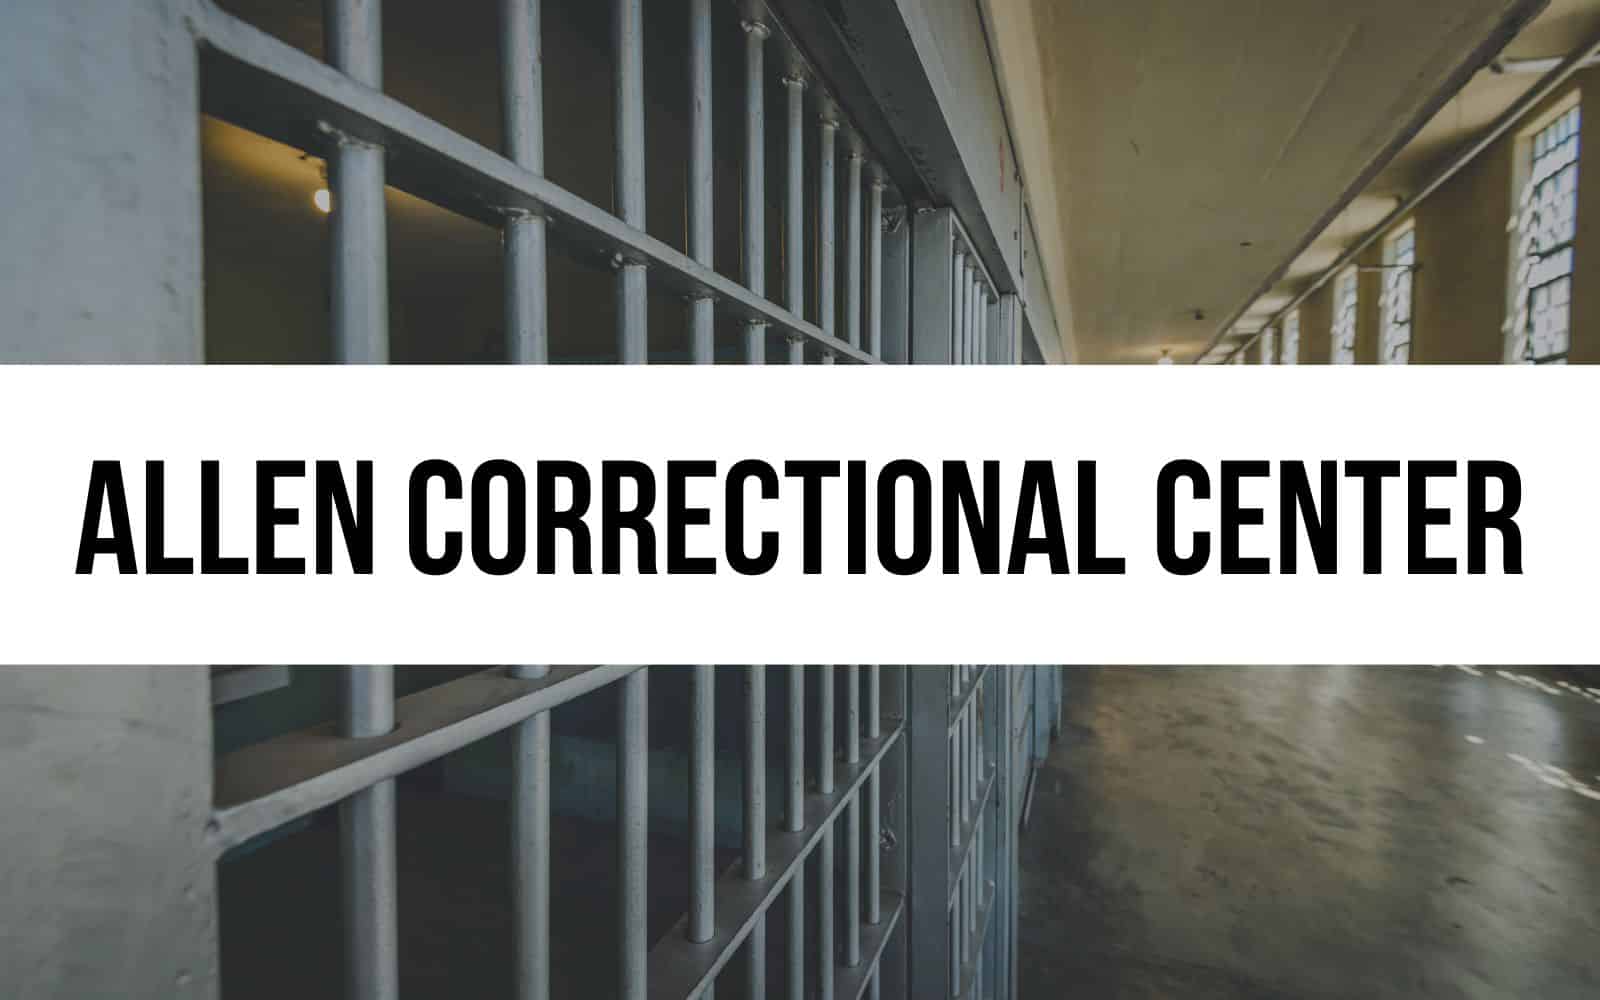 Allen Correctional Center